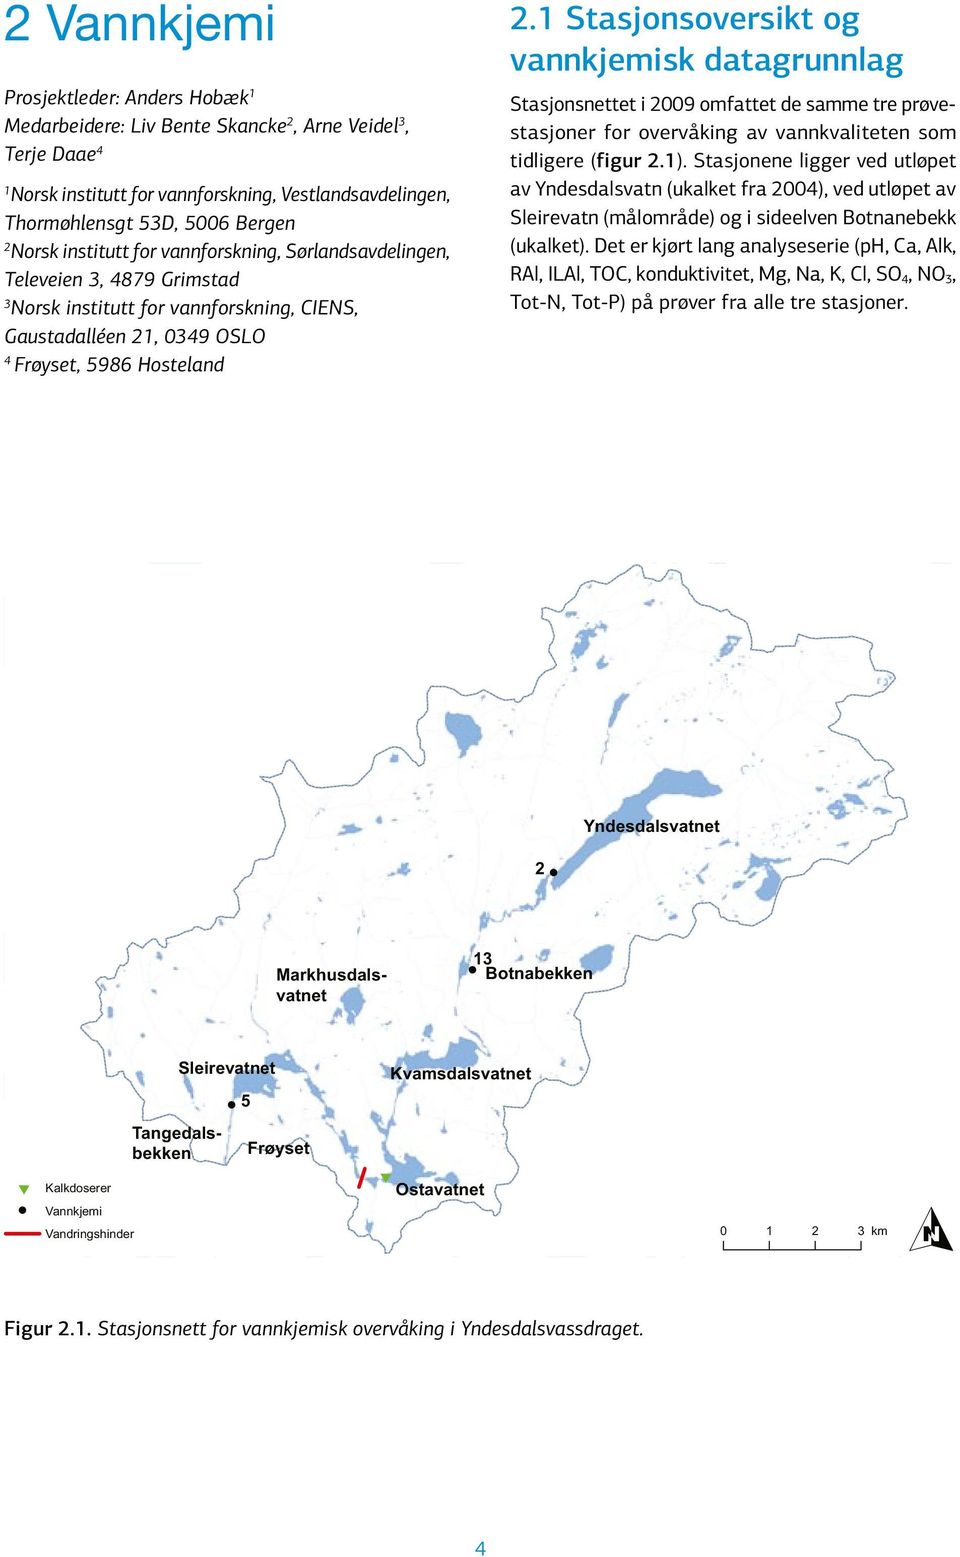 1 Stasjonsoversikt og vannkjemisk datagrunnlag Stasjonsnettet i 29 omfattet de samme tre prøvestasjoner for overvåking av vannkvaliteten som tidligere (figur 2.1).